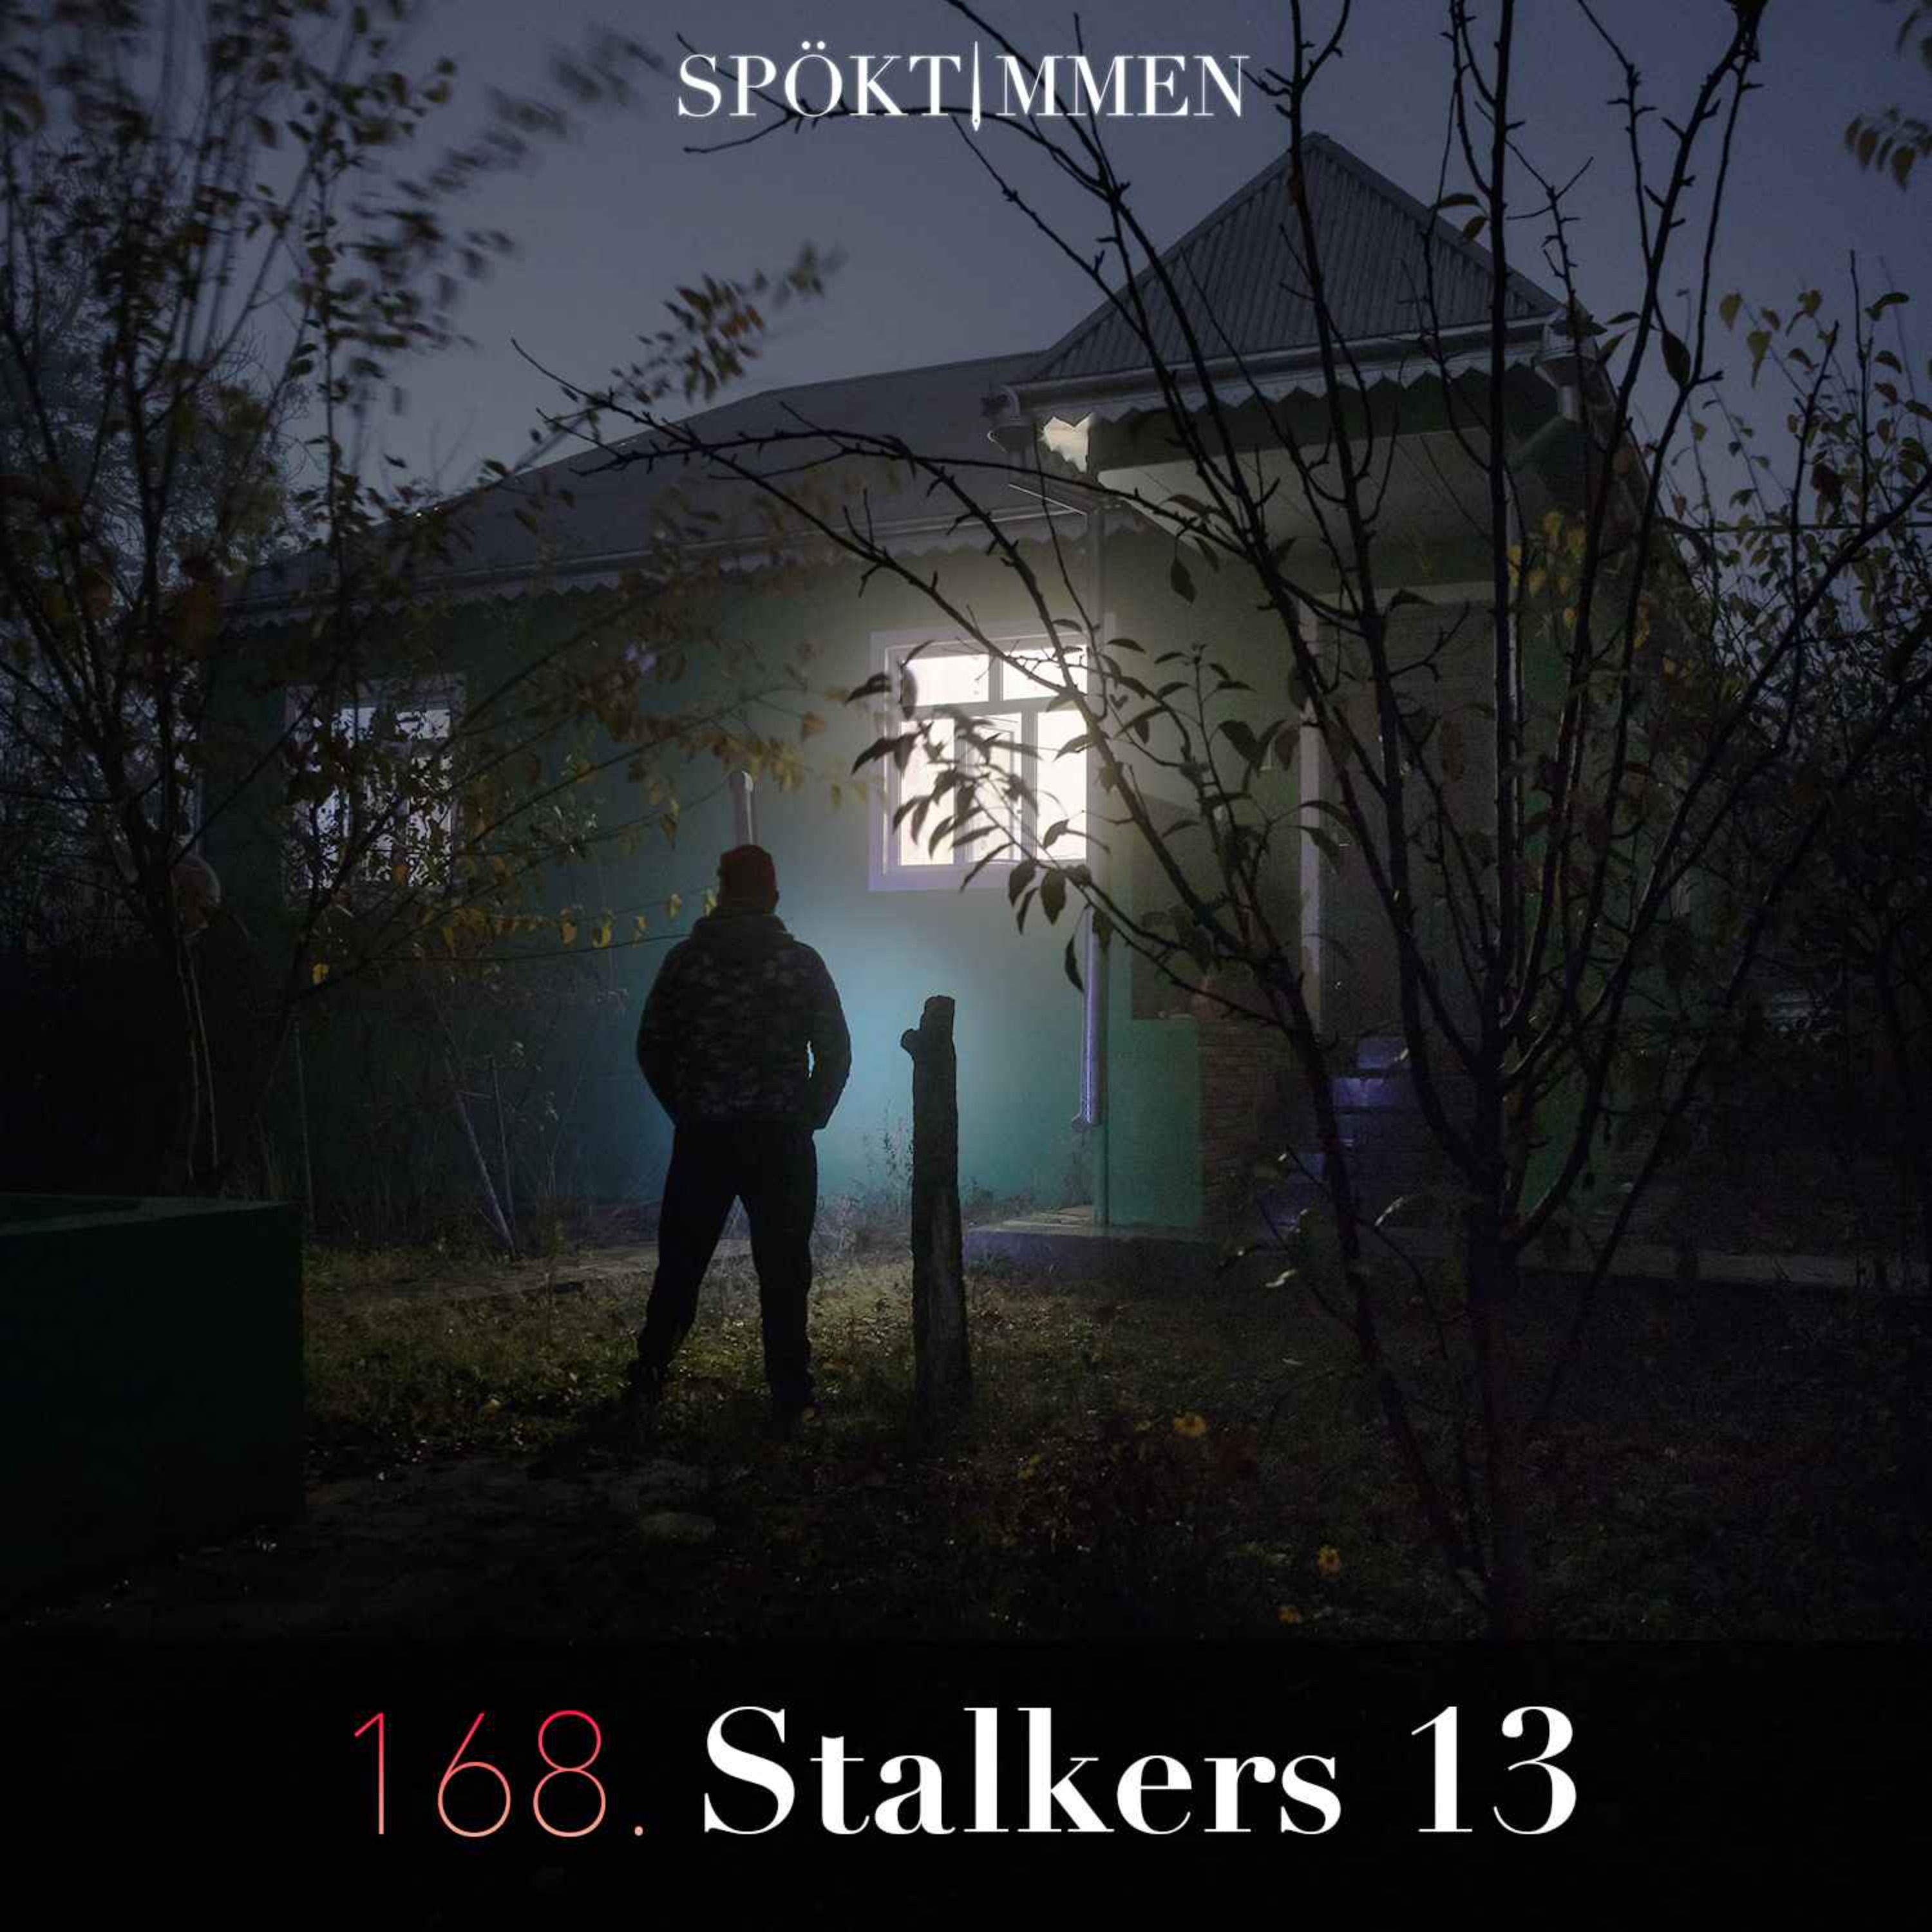 Stalkers 13